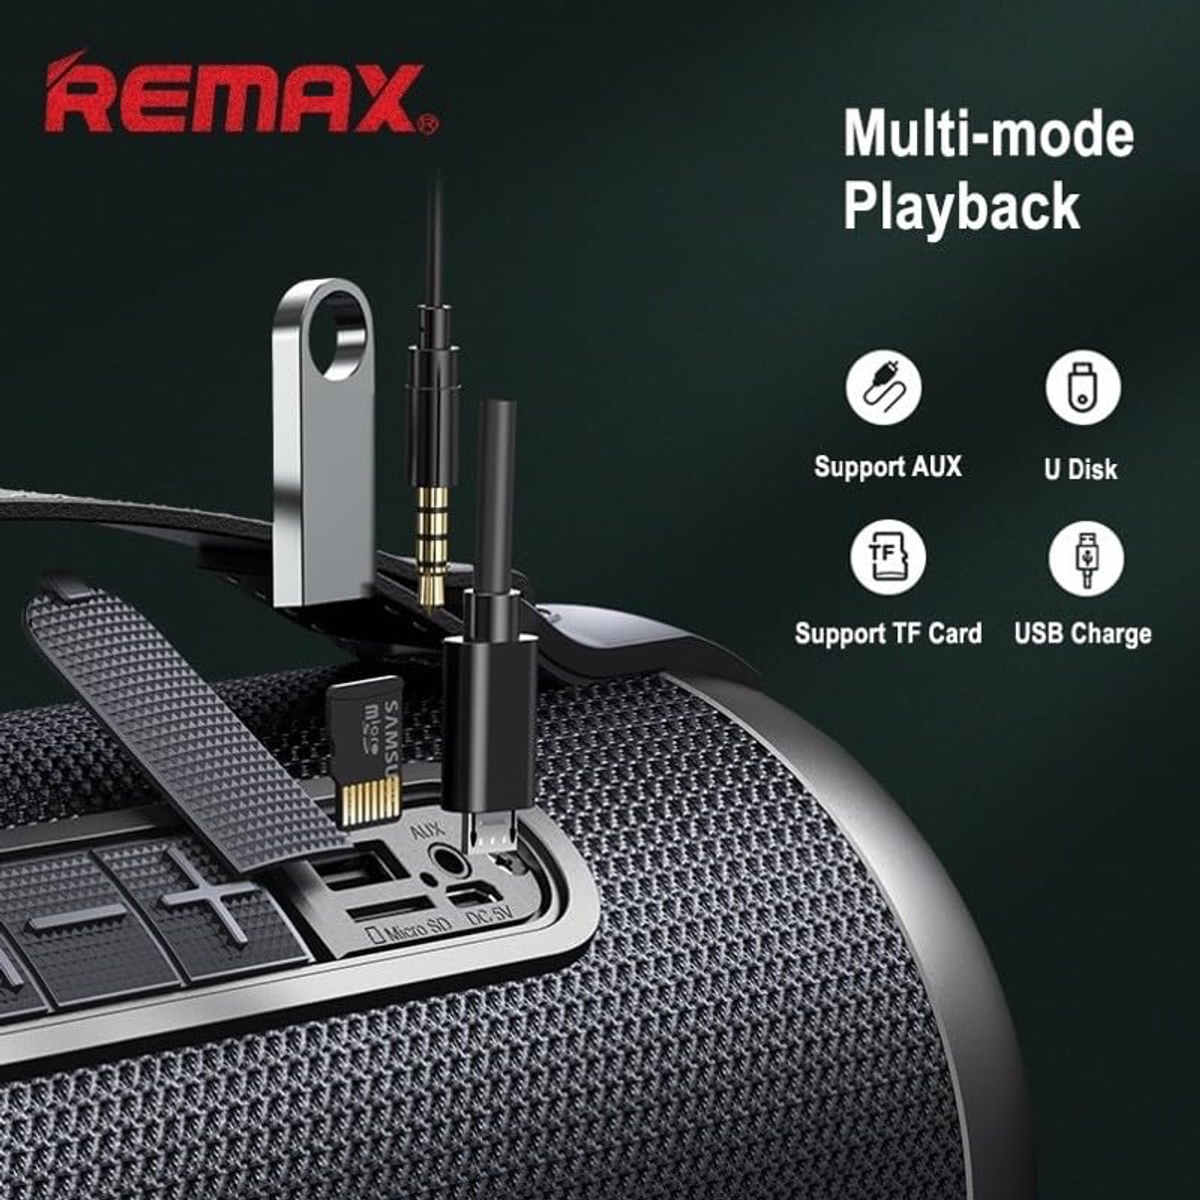 RB-M43 Lautsprecher, Schwarz REMAX Bluetooth